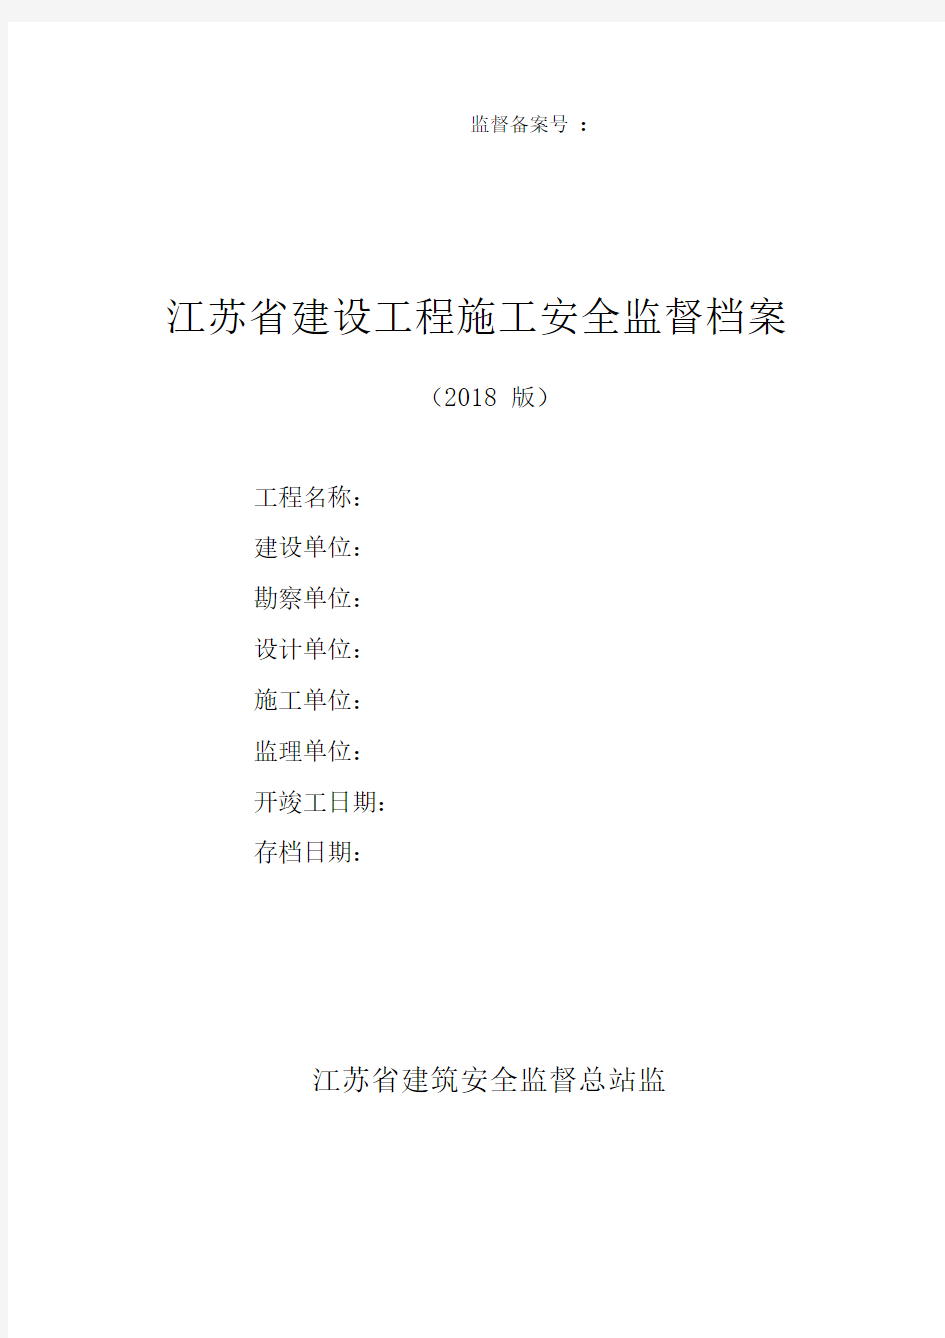 江苏省建设工程施工安全监督档案(2018版)